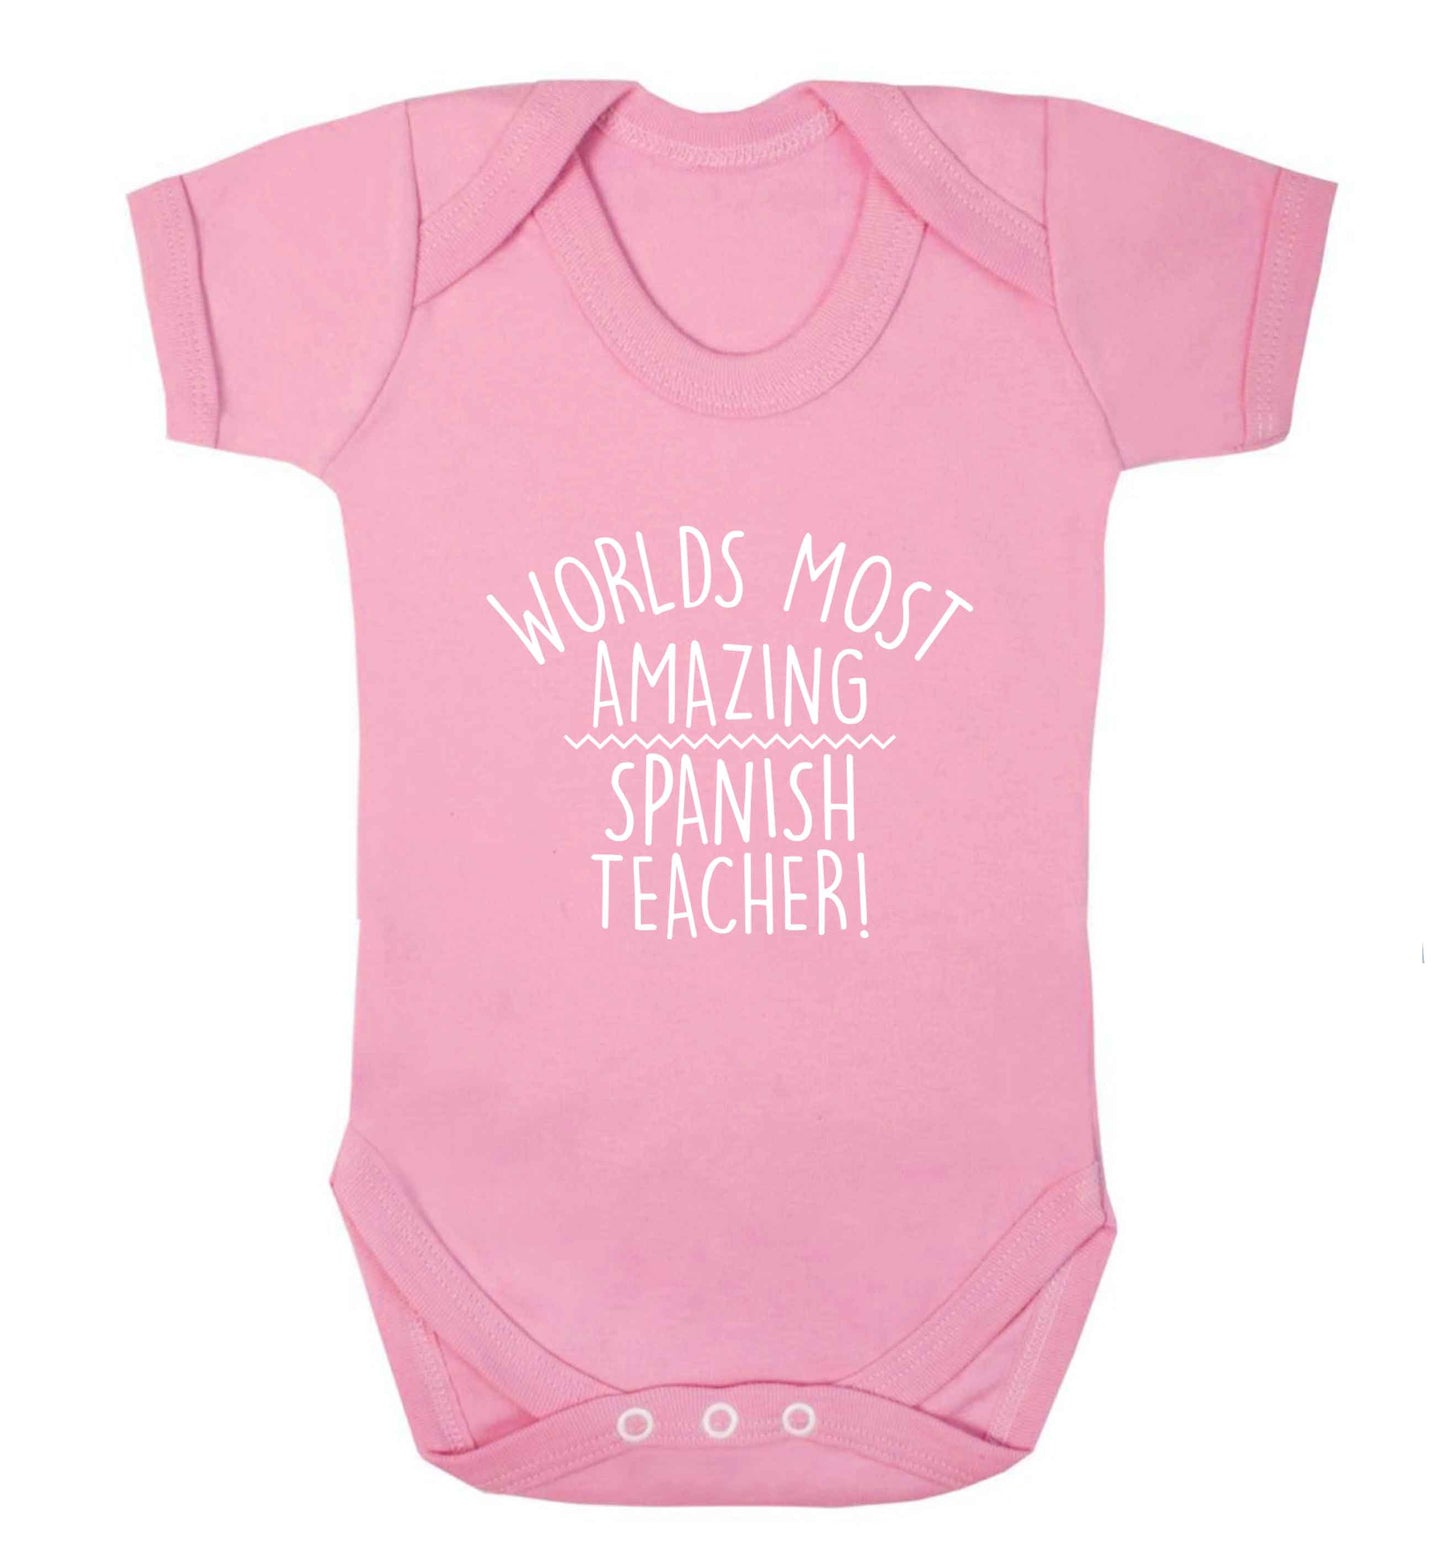 Worlds most amazing Spanish teacher baby vest pale pink 18-24 months